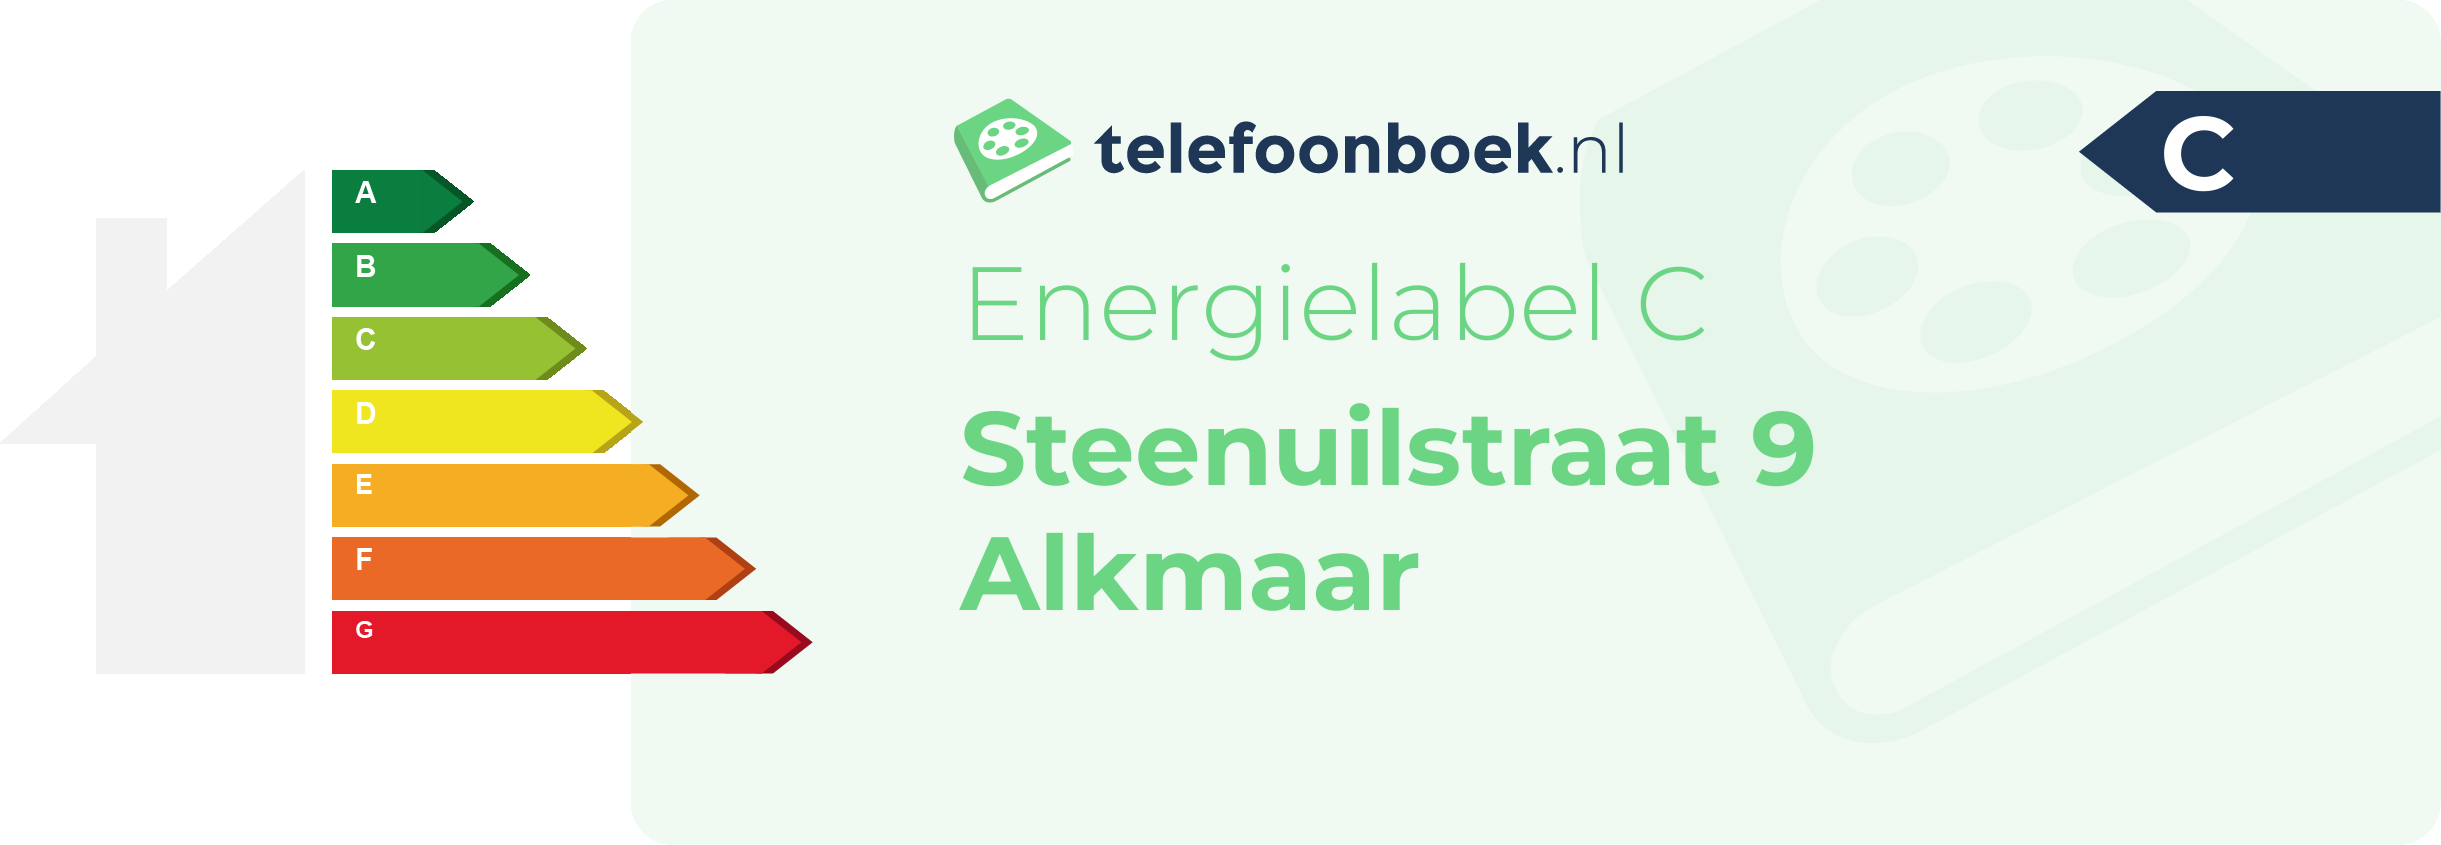 Energielabel Steenuilstraat 9 Alkmaar